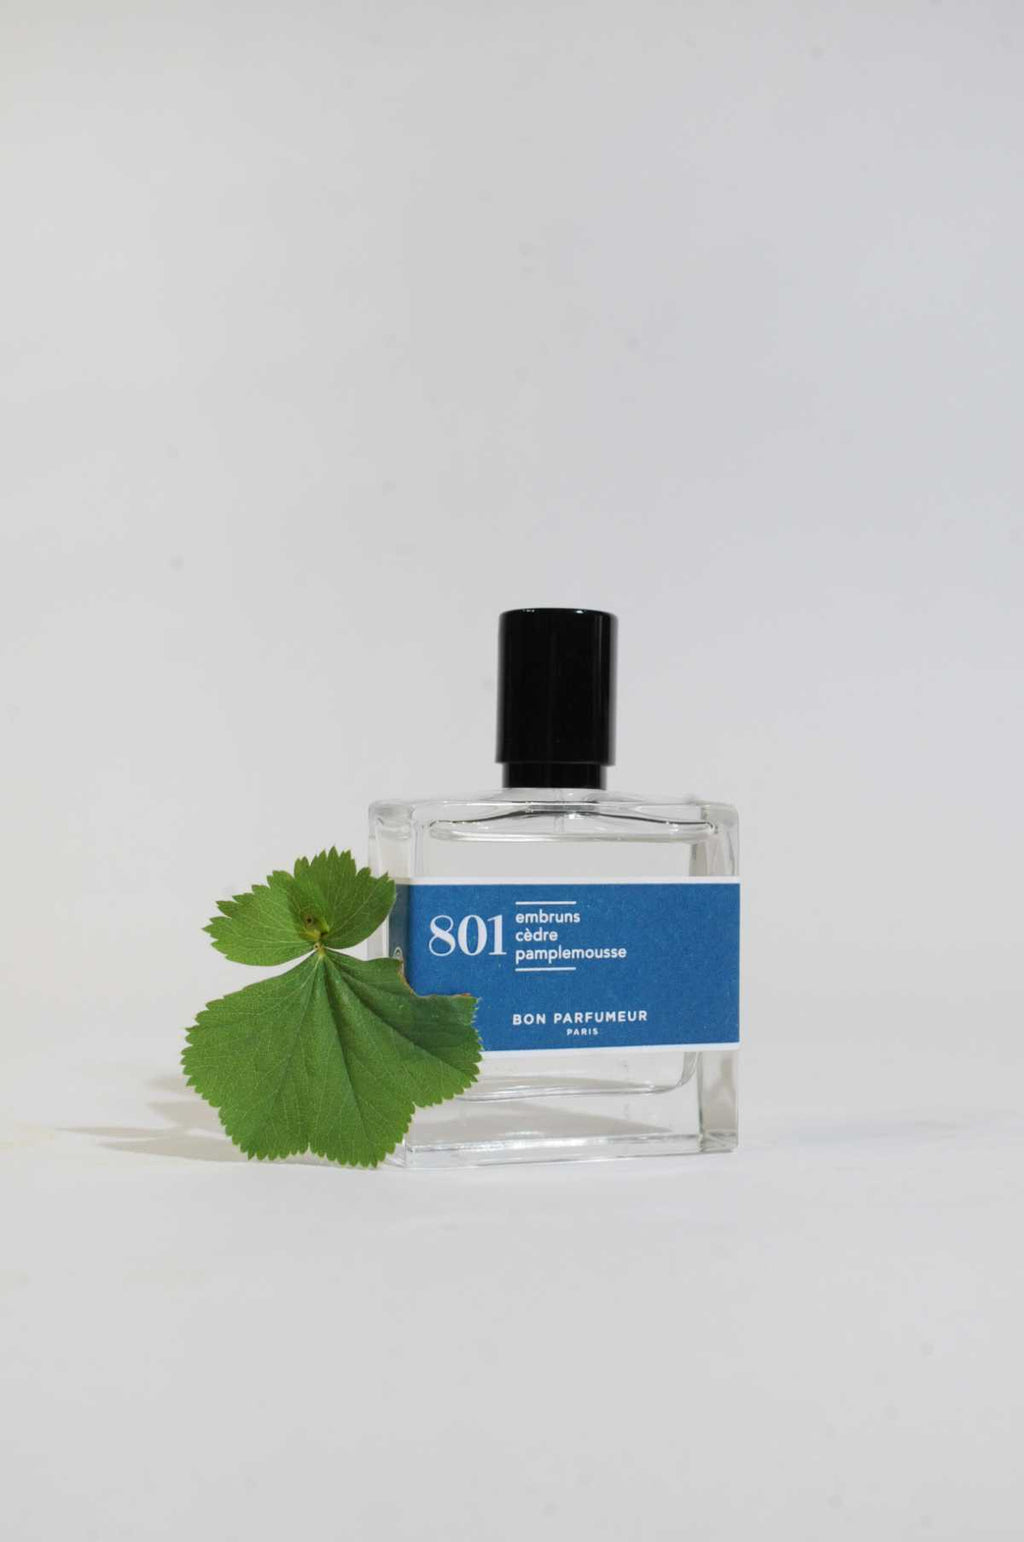 Eau de Parfum 801 – The Hambledon